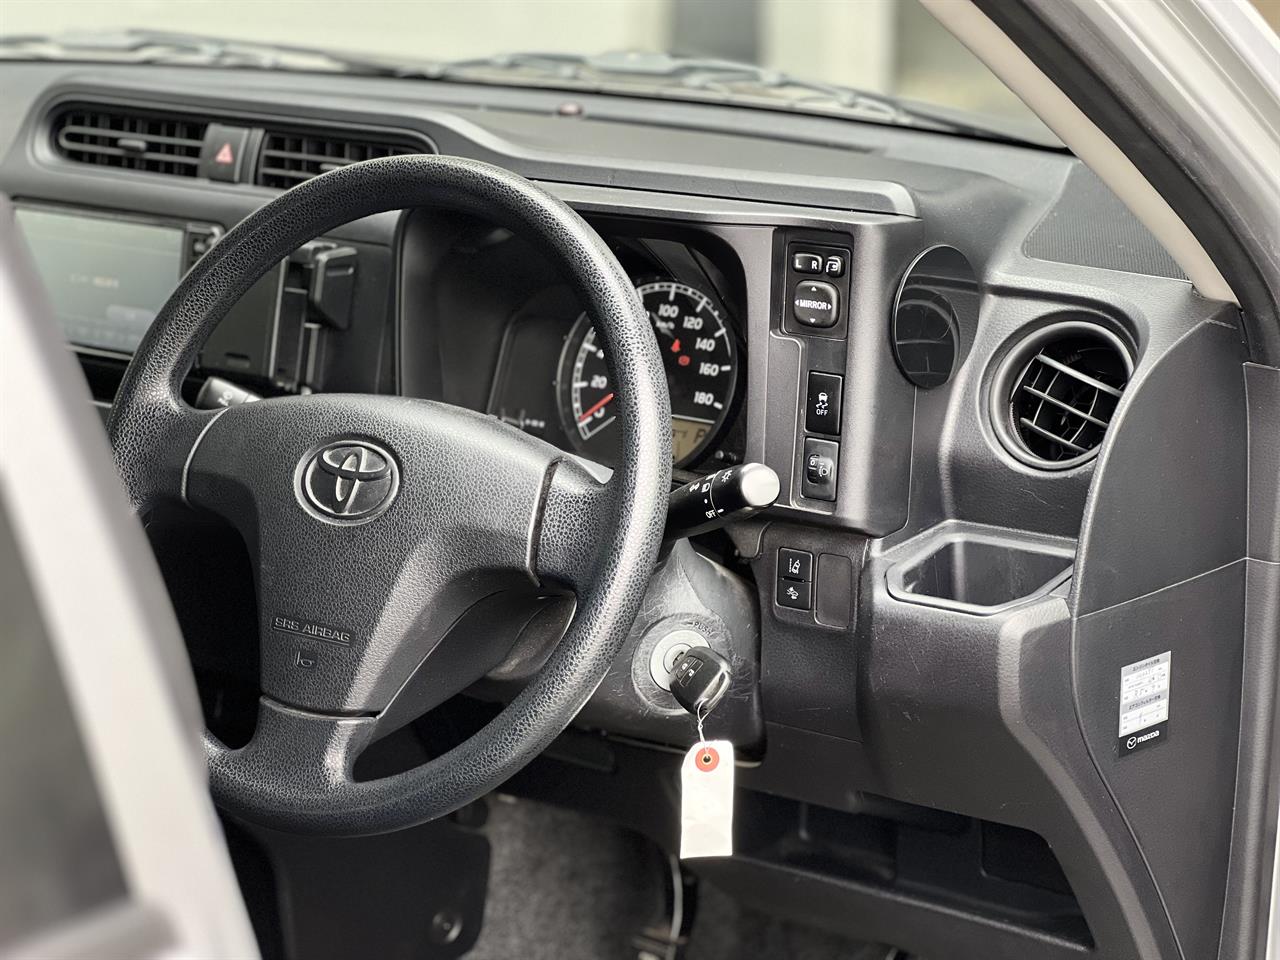 2016 Toyota Probox